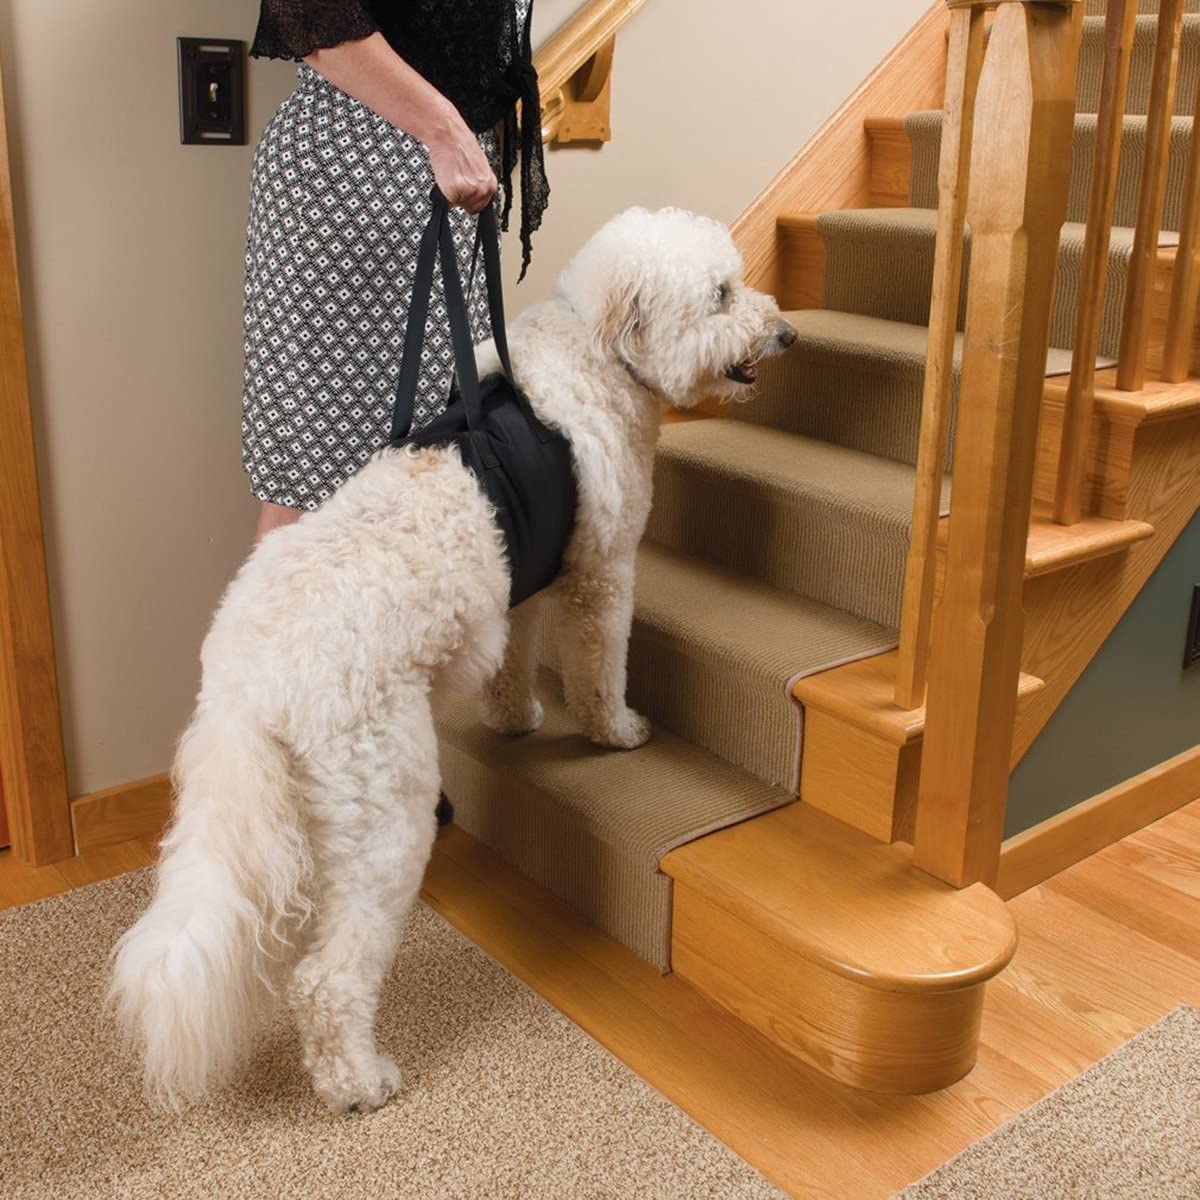  Perro elevación soporte arnés canino ayuda rehabilitación arnés para perros con patas traseras débiles, 10-25KG 